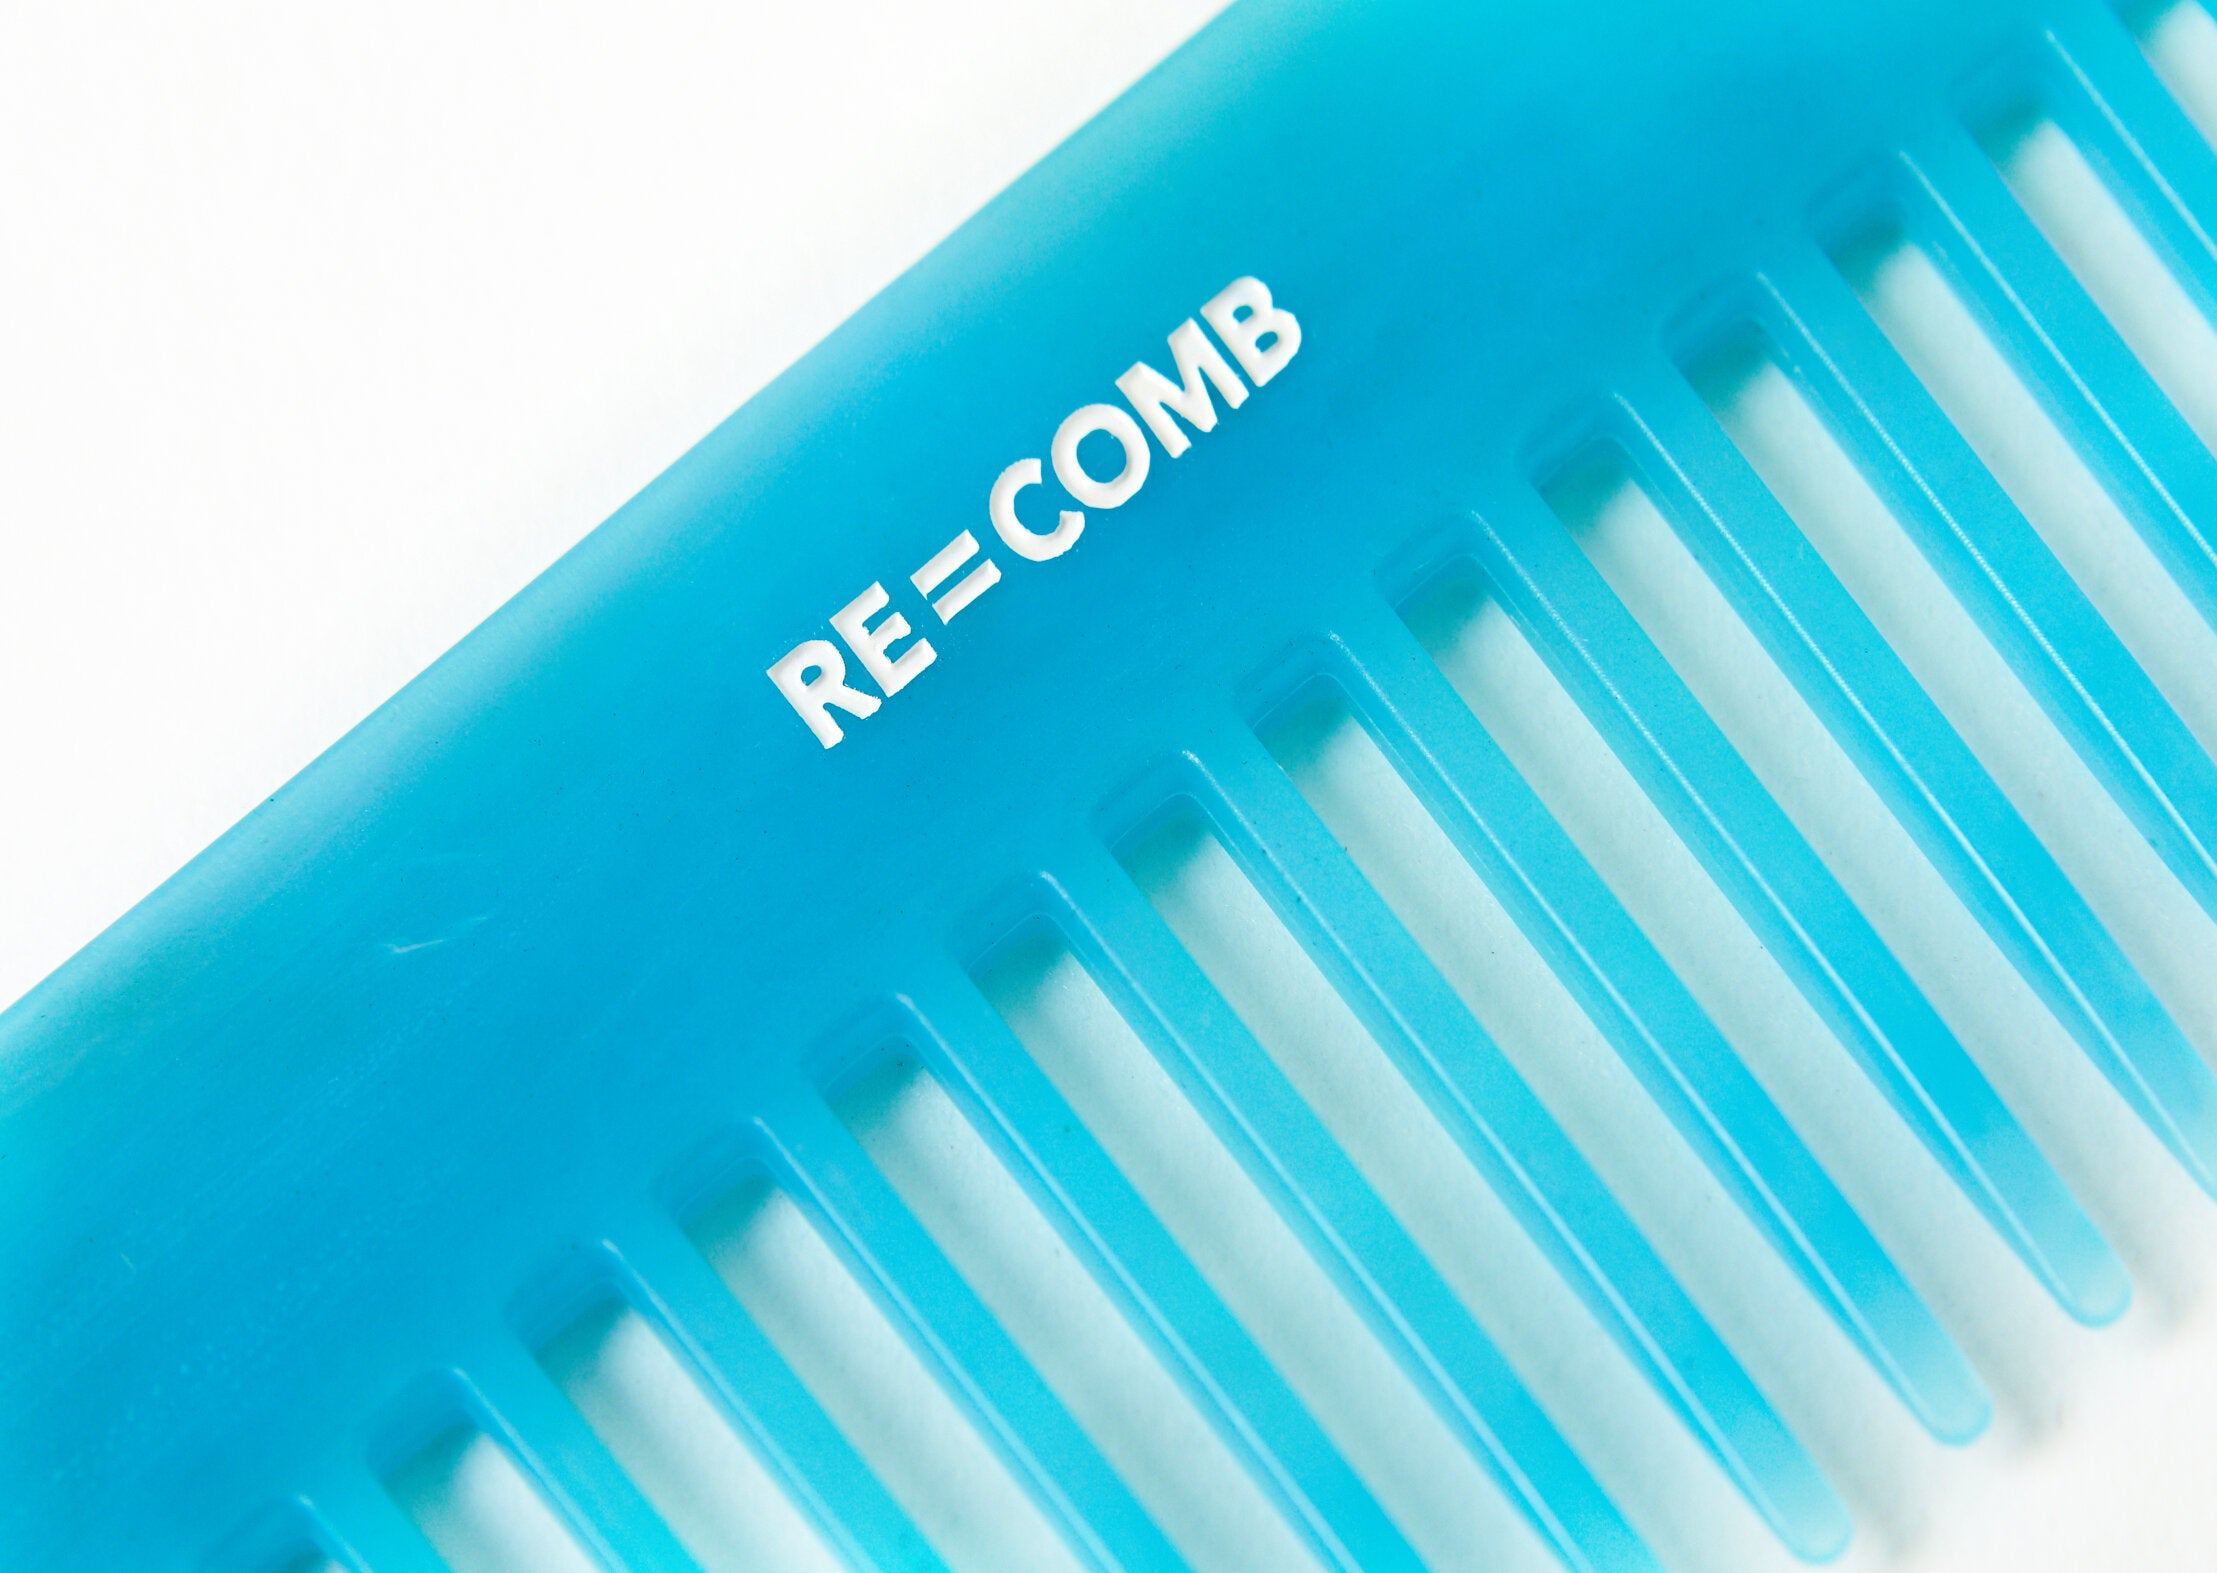 Re=Comb - Re=Comb - Recycled Plastic Comb - Air